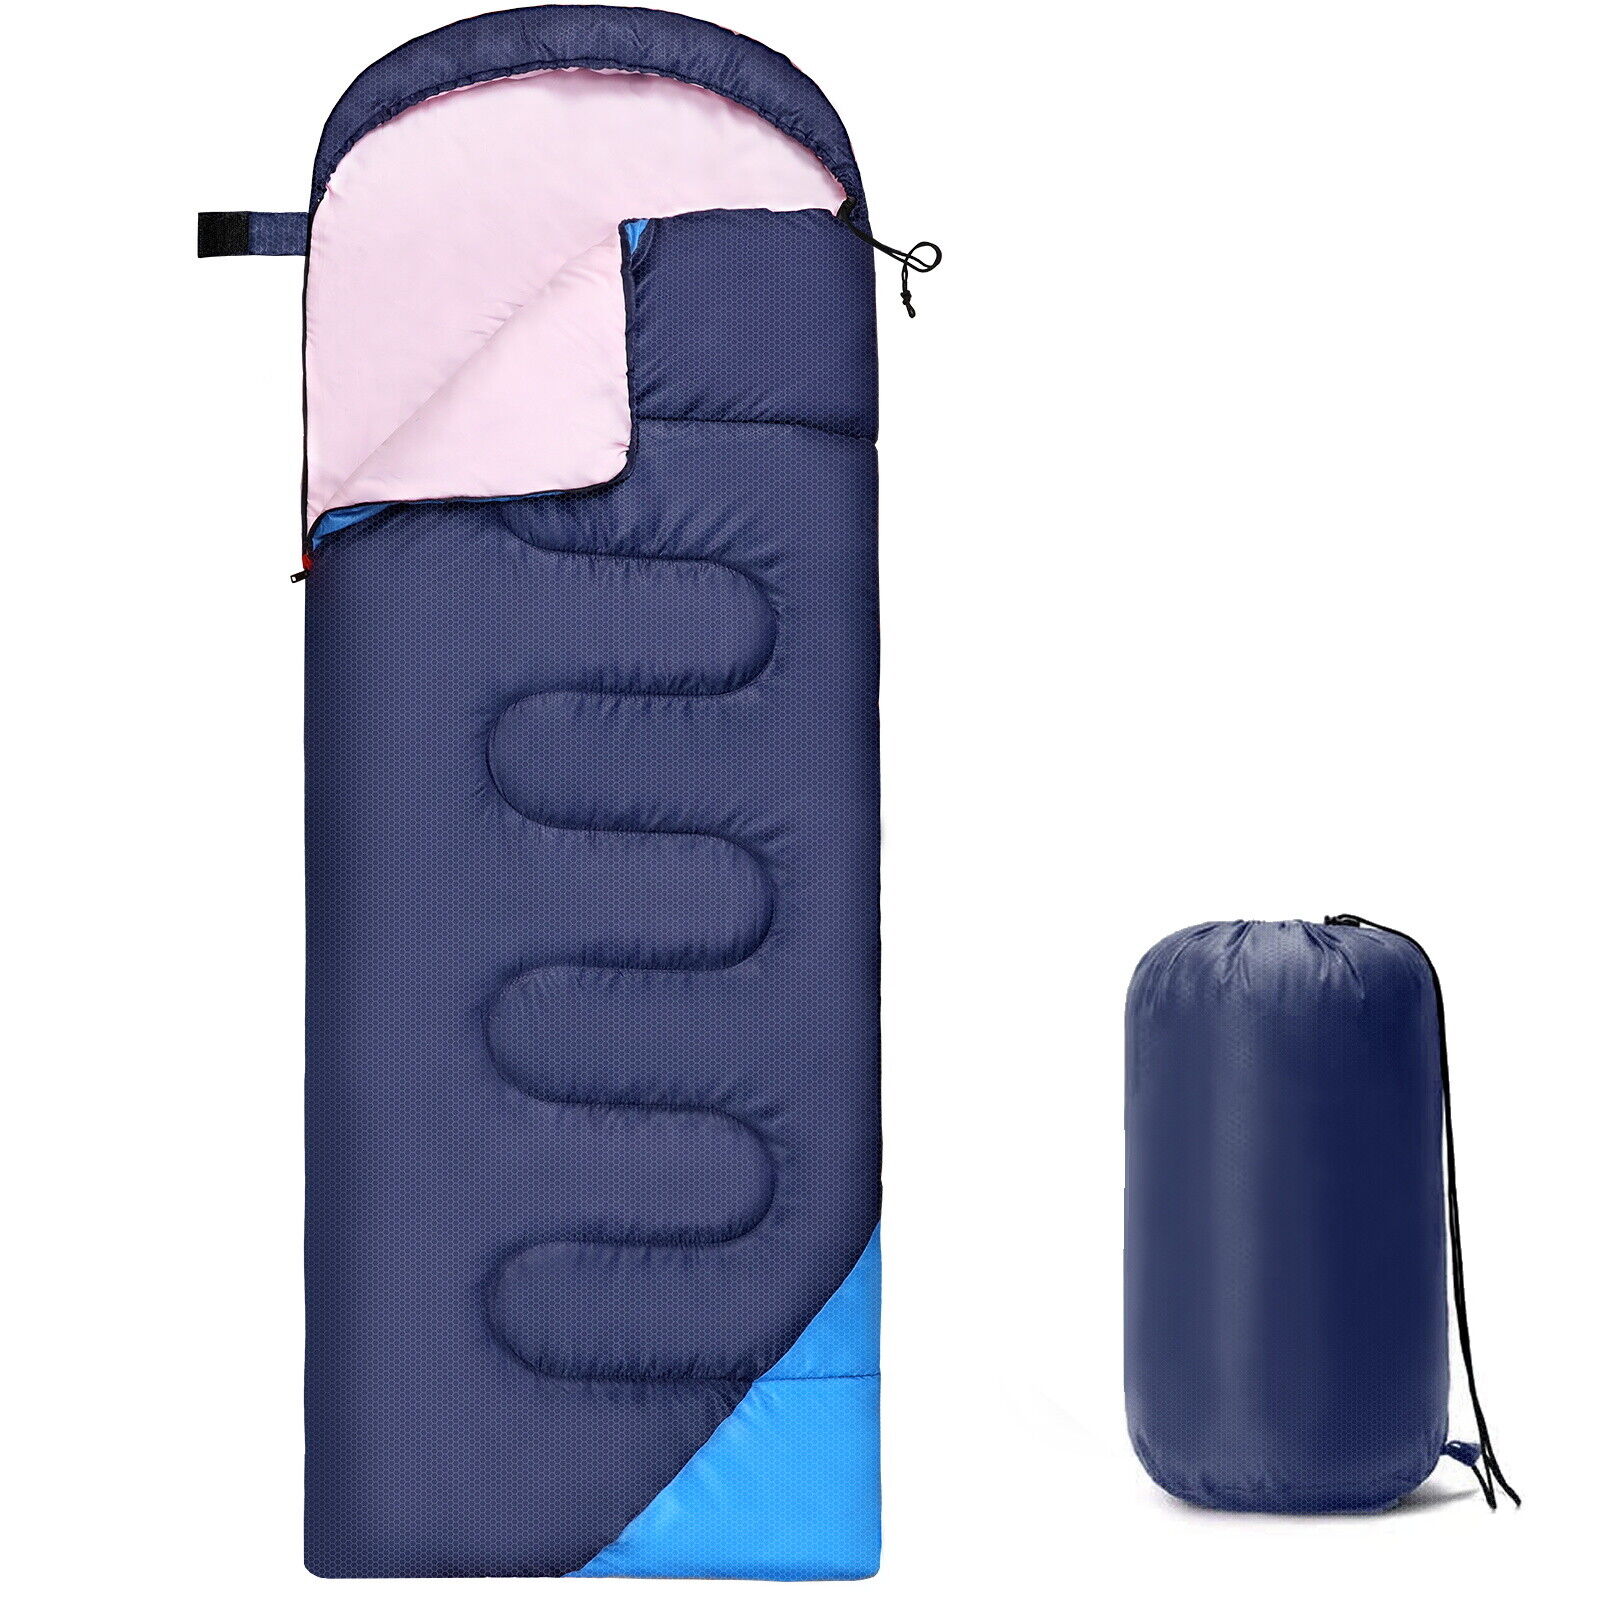 4 Season Camping Envelope Sleeping Bag Waterproof lightweight Outdoor Hiking 0 ℃